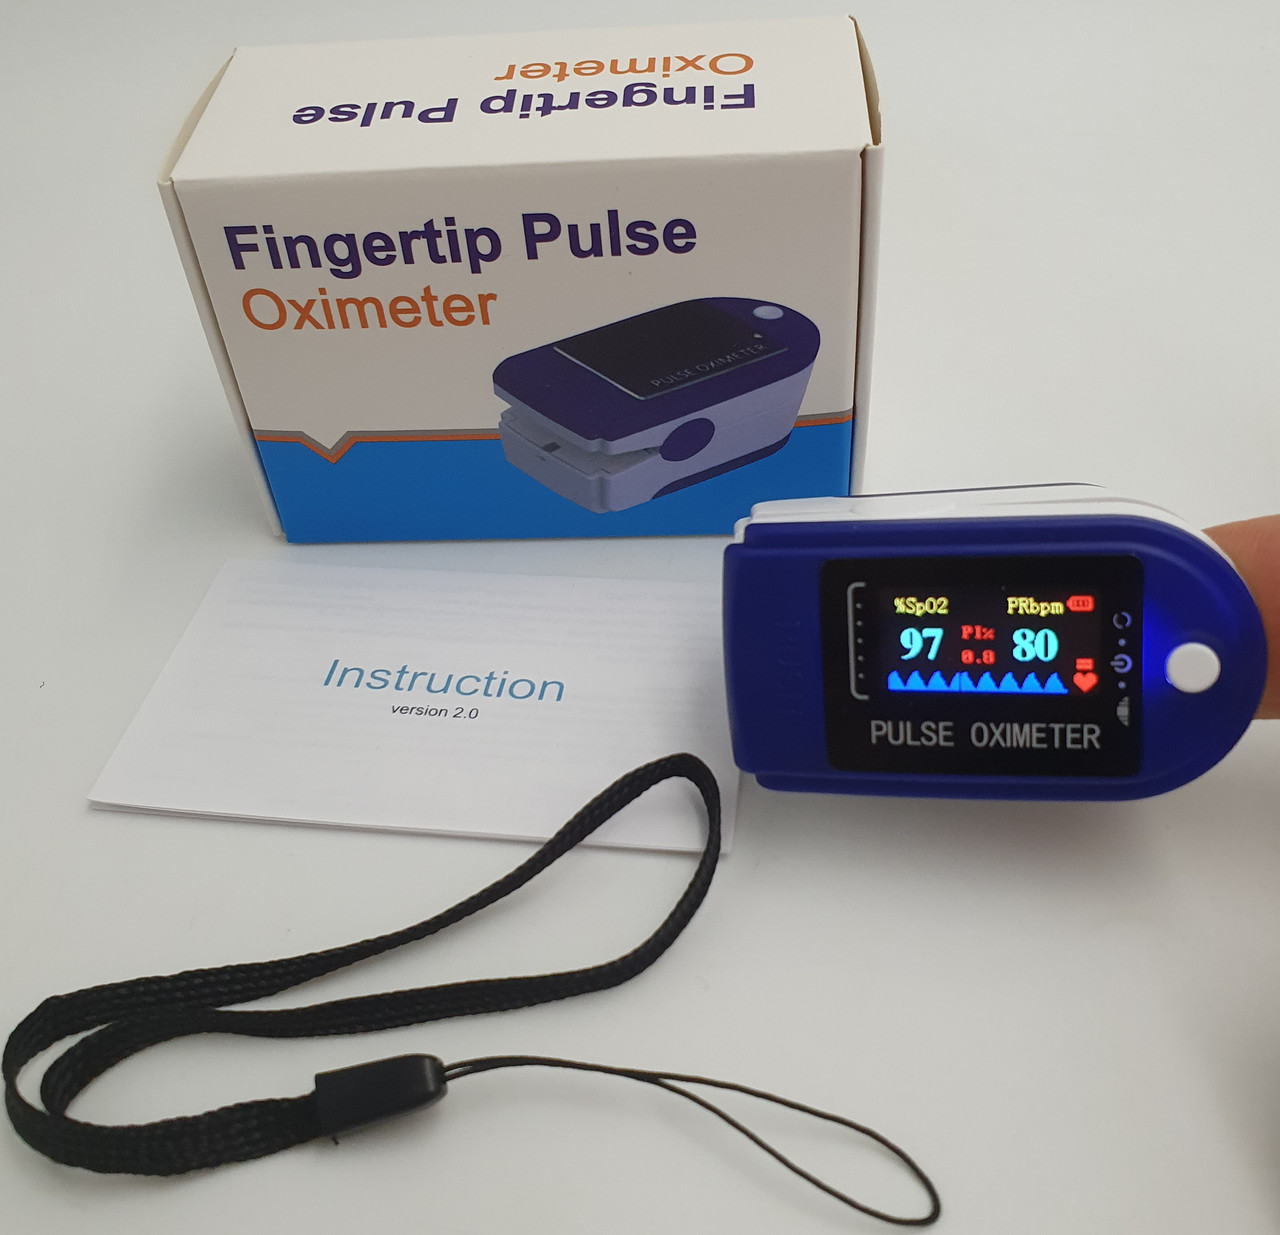 

Пульсометр измеритель пульса и кислорода в крови бытовой Fingertip Pulse Oximeter AB-88, Buy now